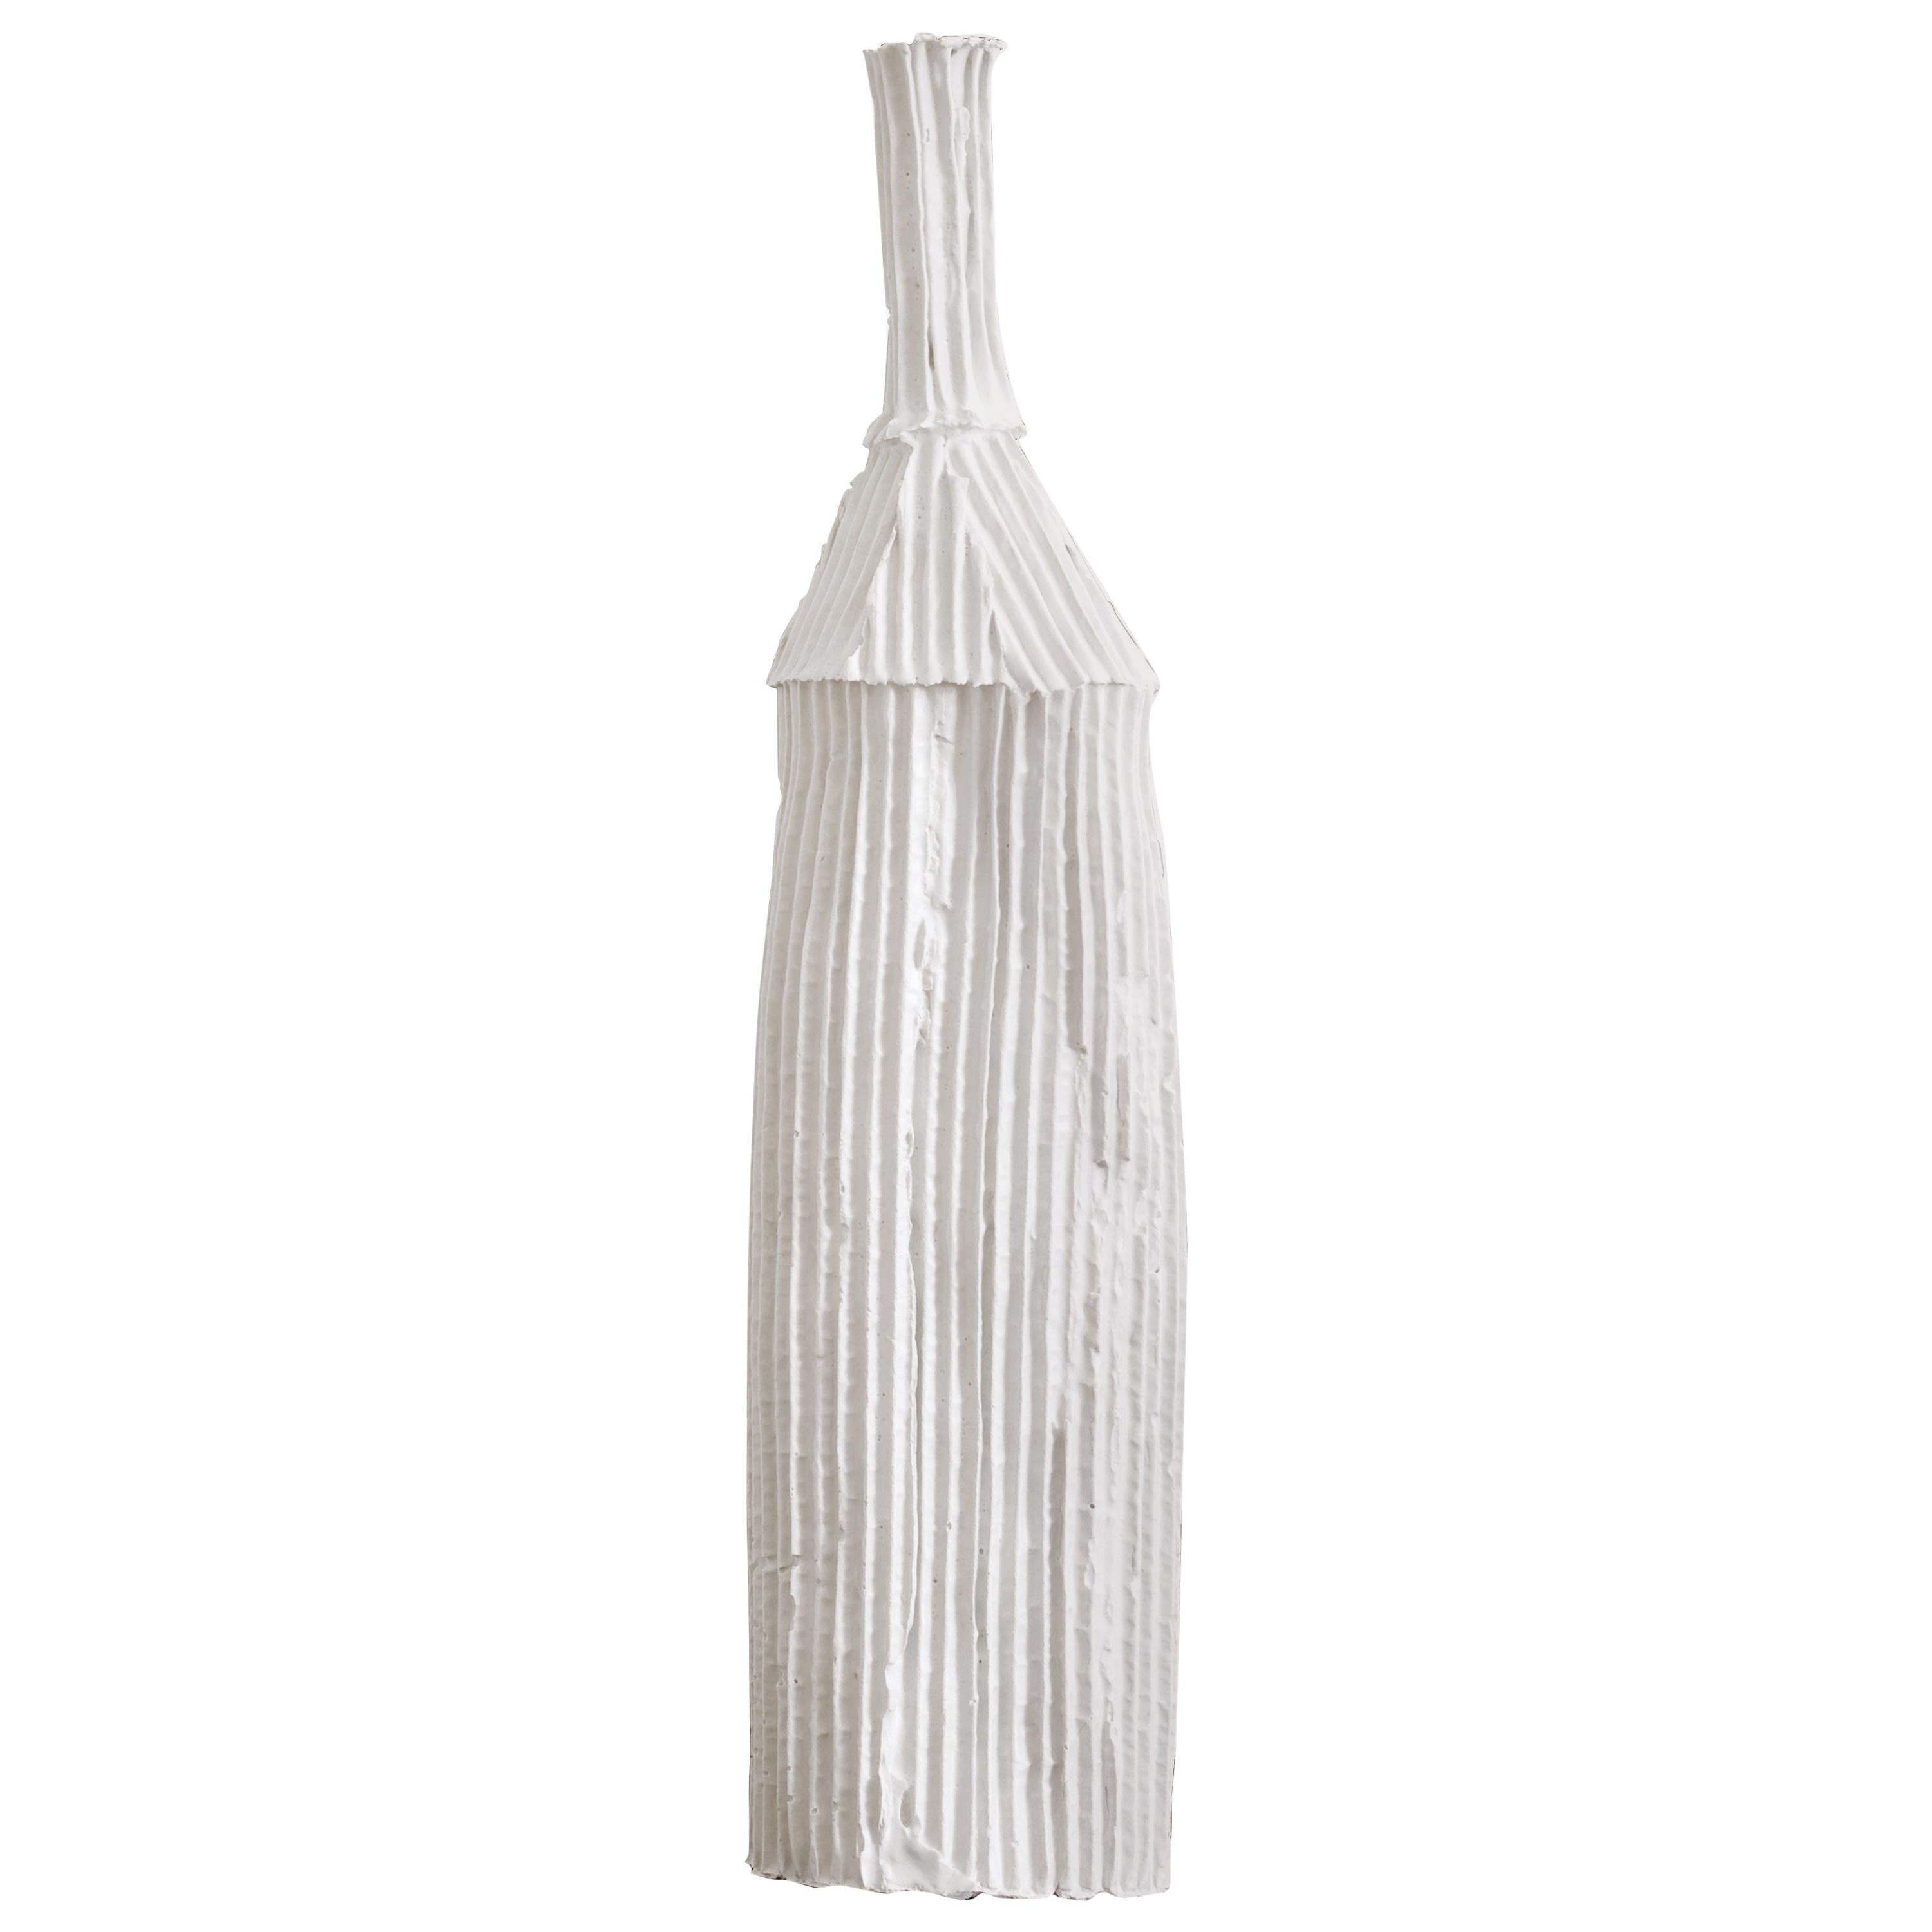 Contemporary Ceramic Cartocci Texture White Decorative Bottle